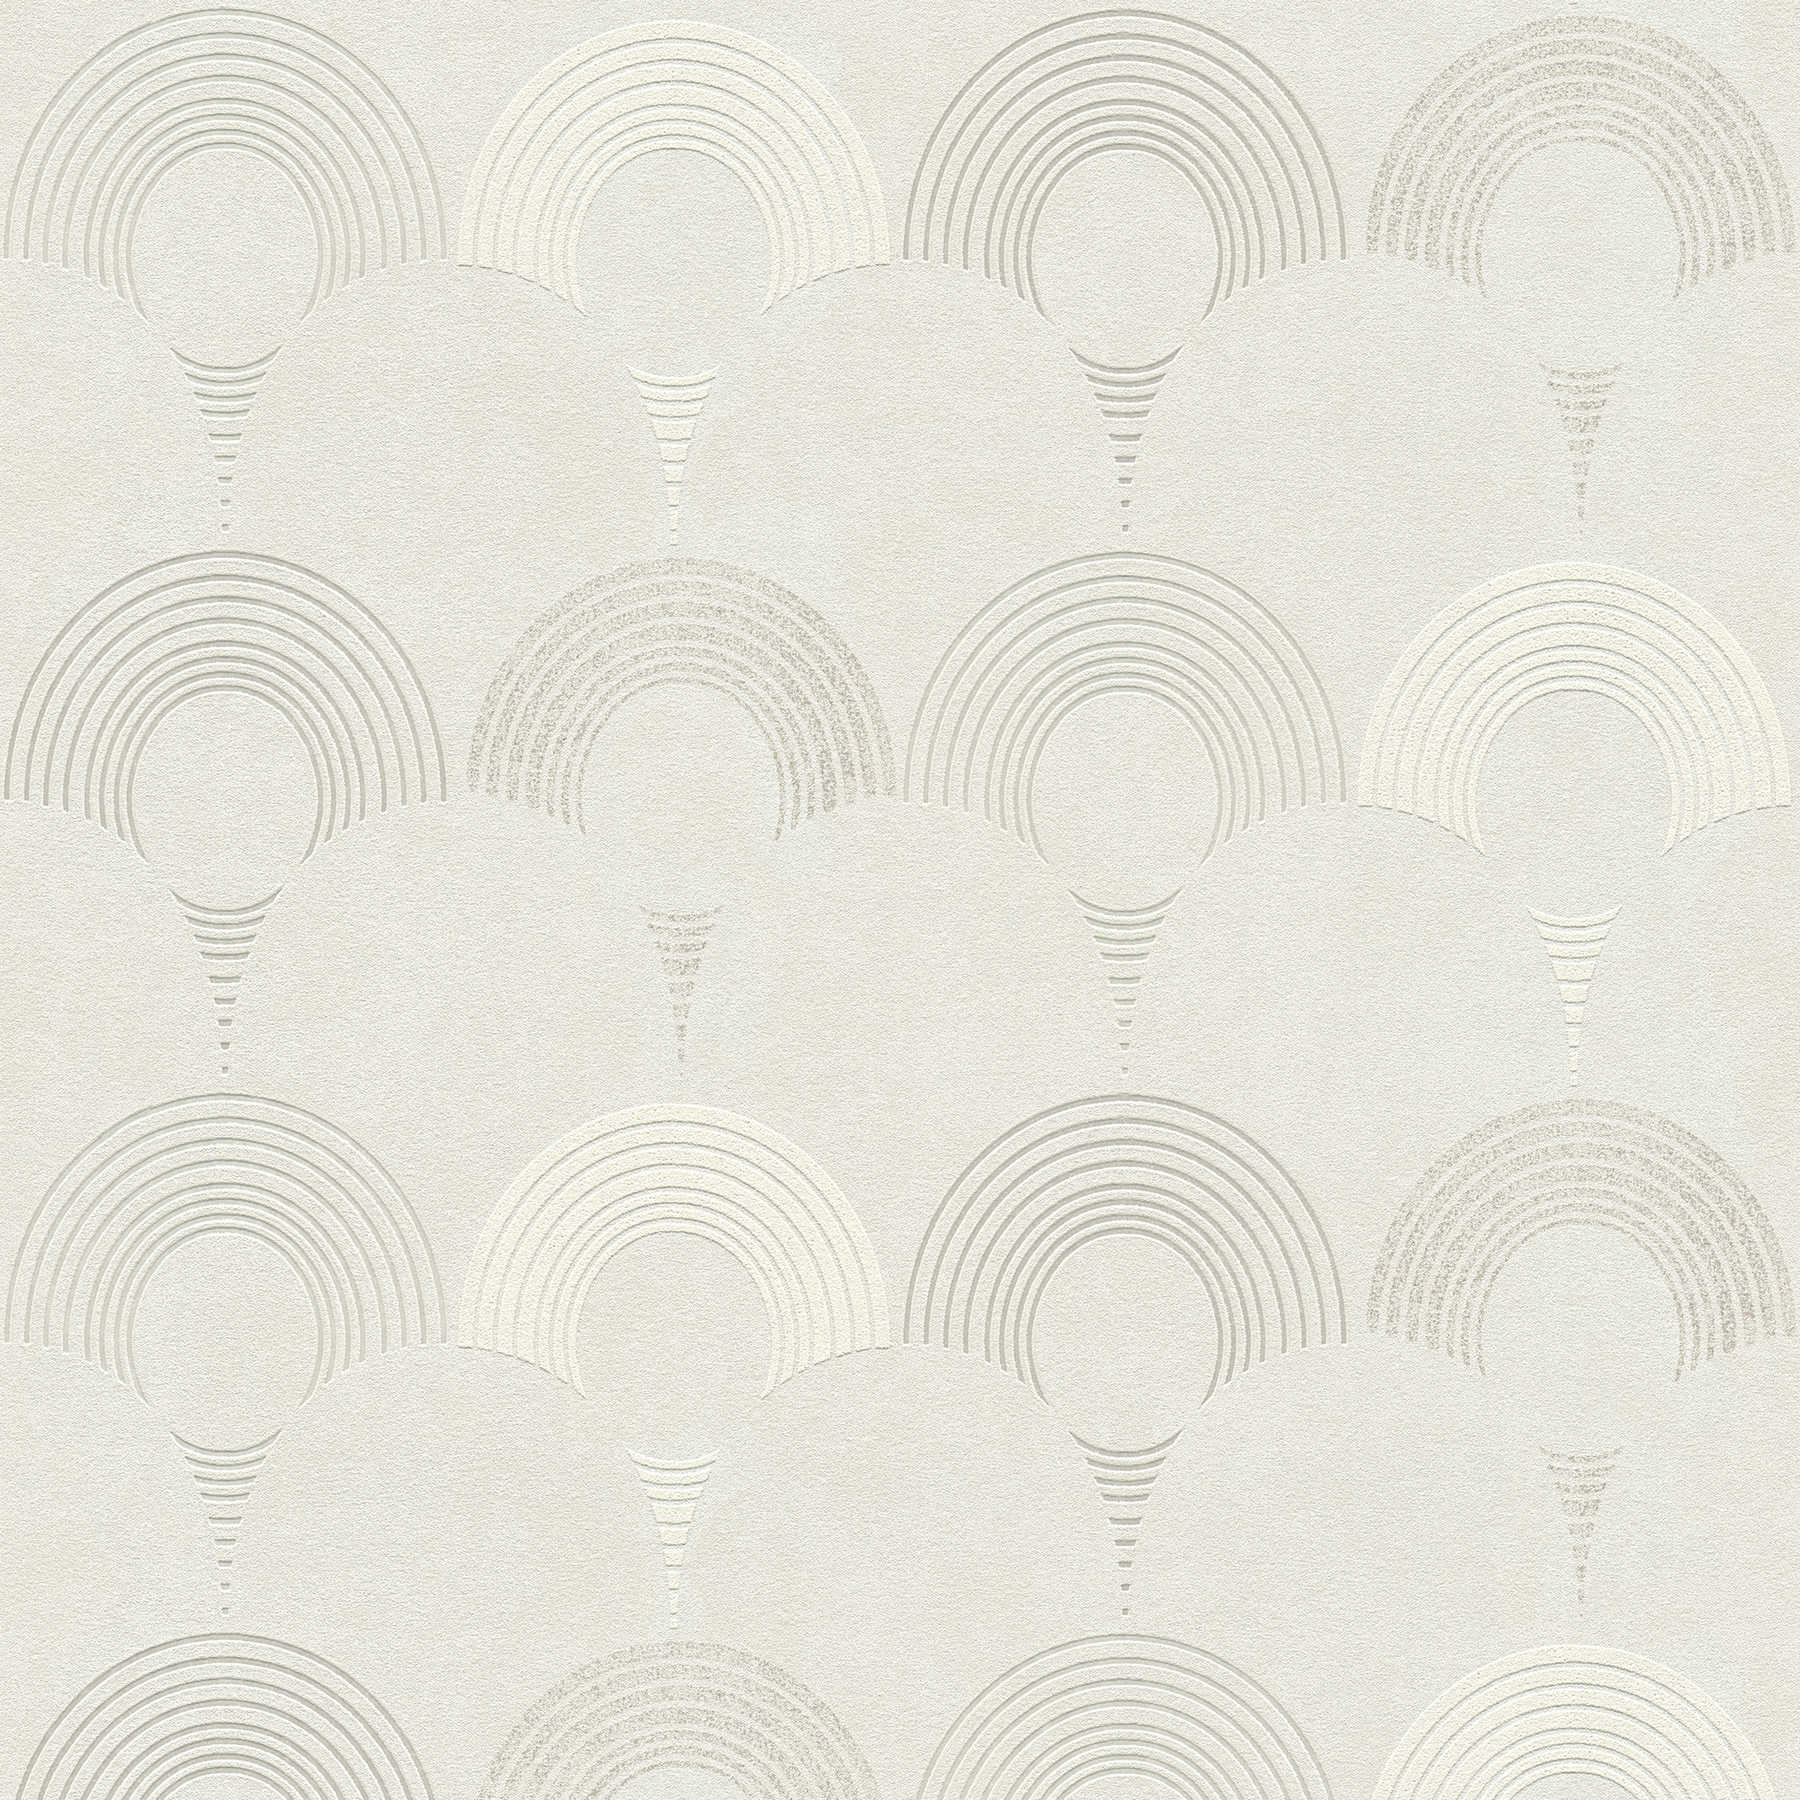         Vliesbehang in retrostijl, geometrisch cirkelpatroon - grijs, zilver, wit
    